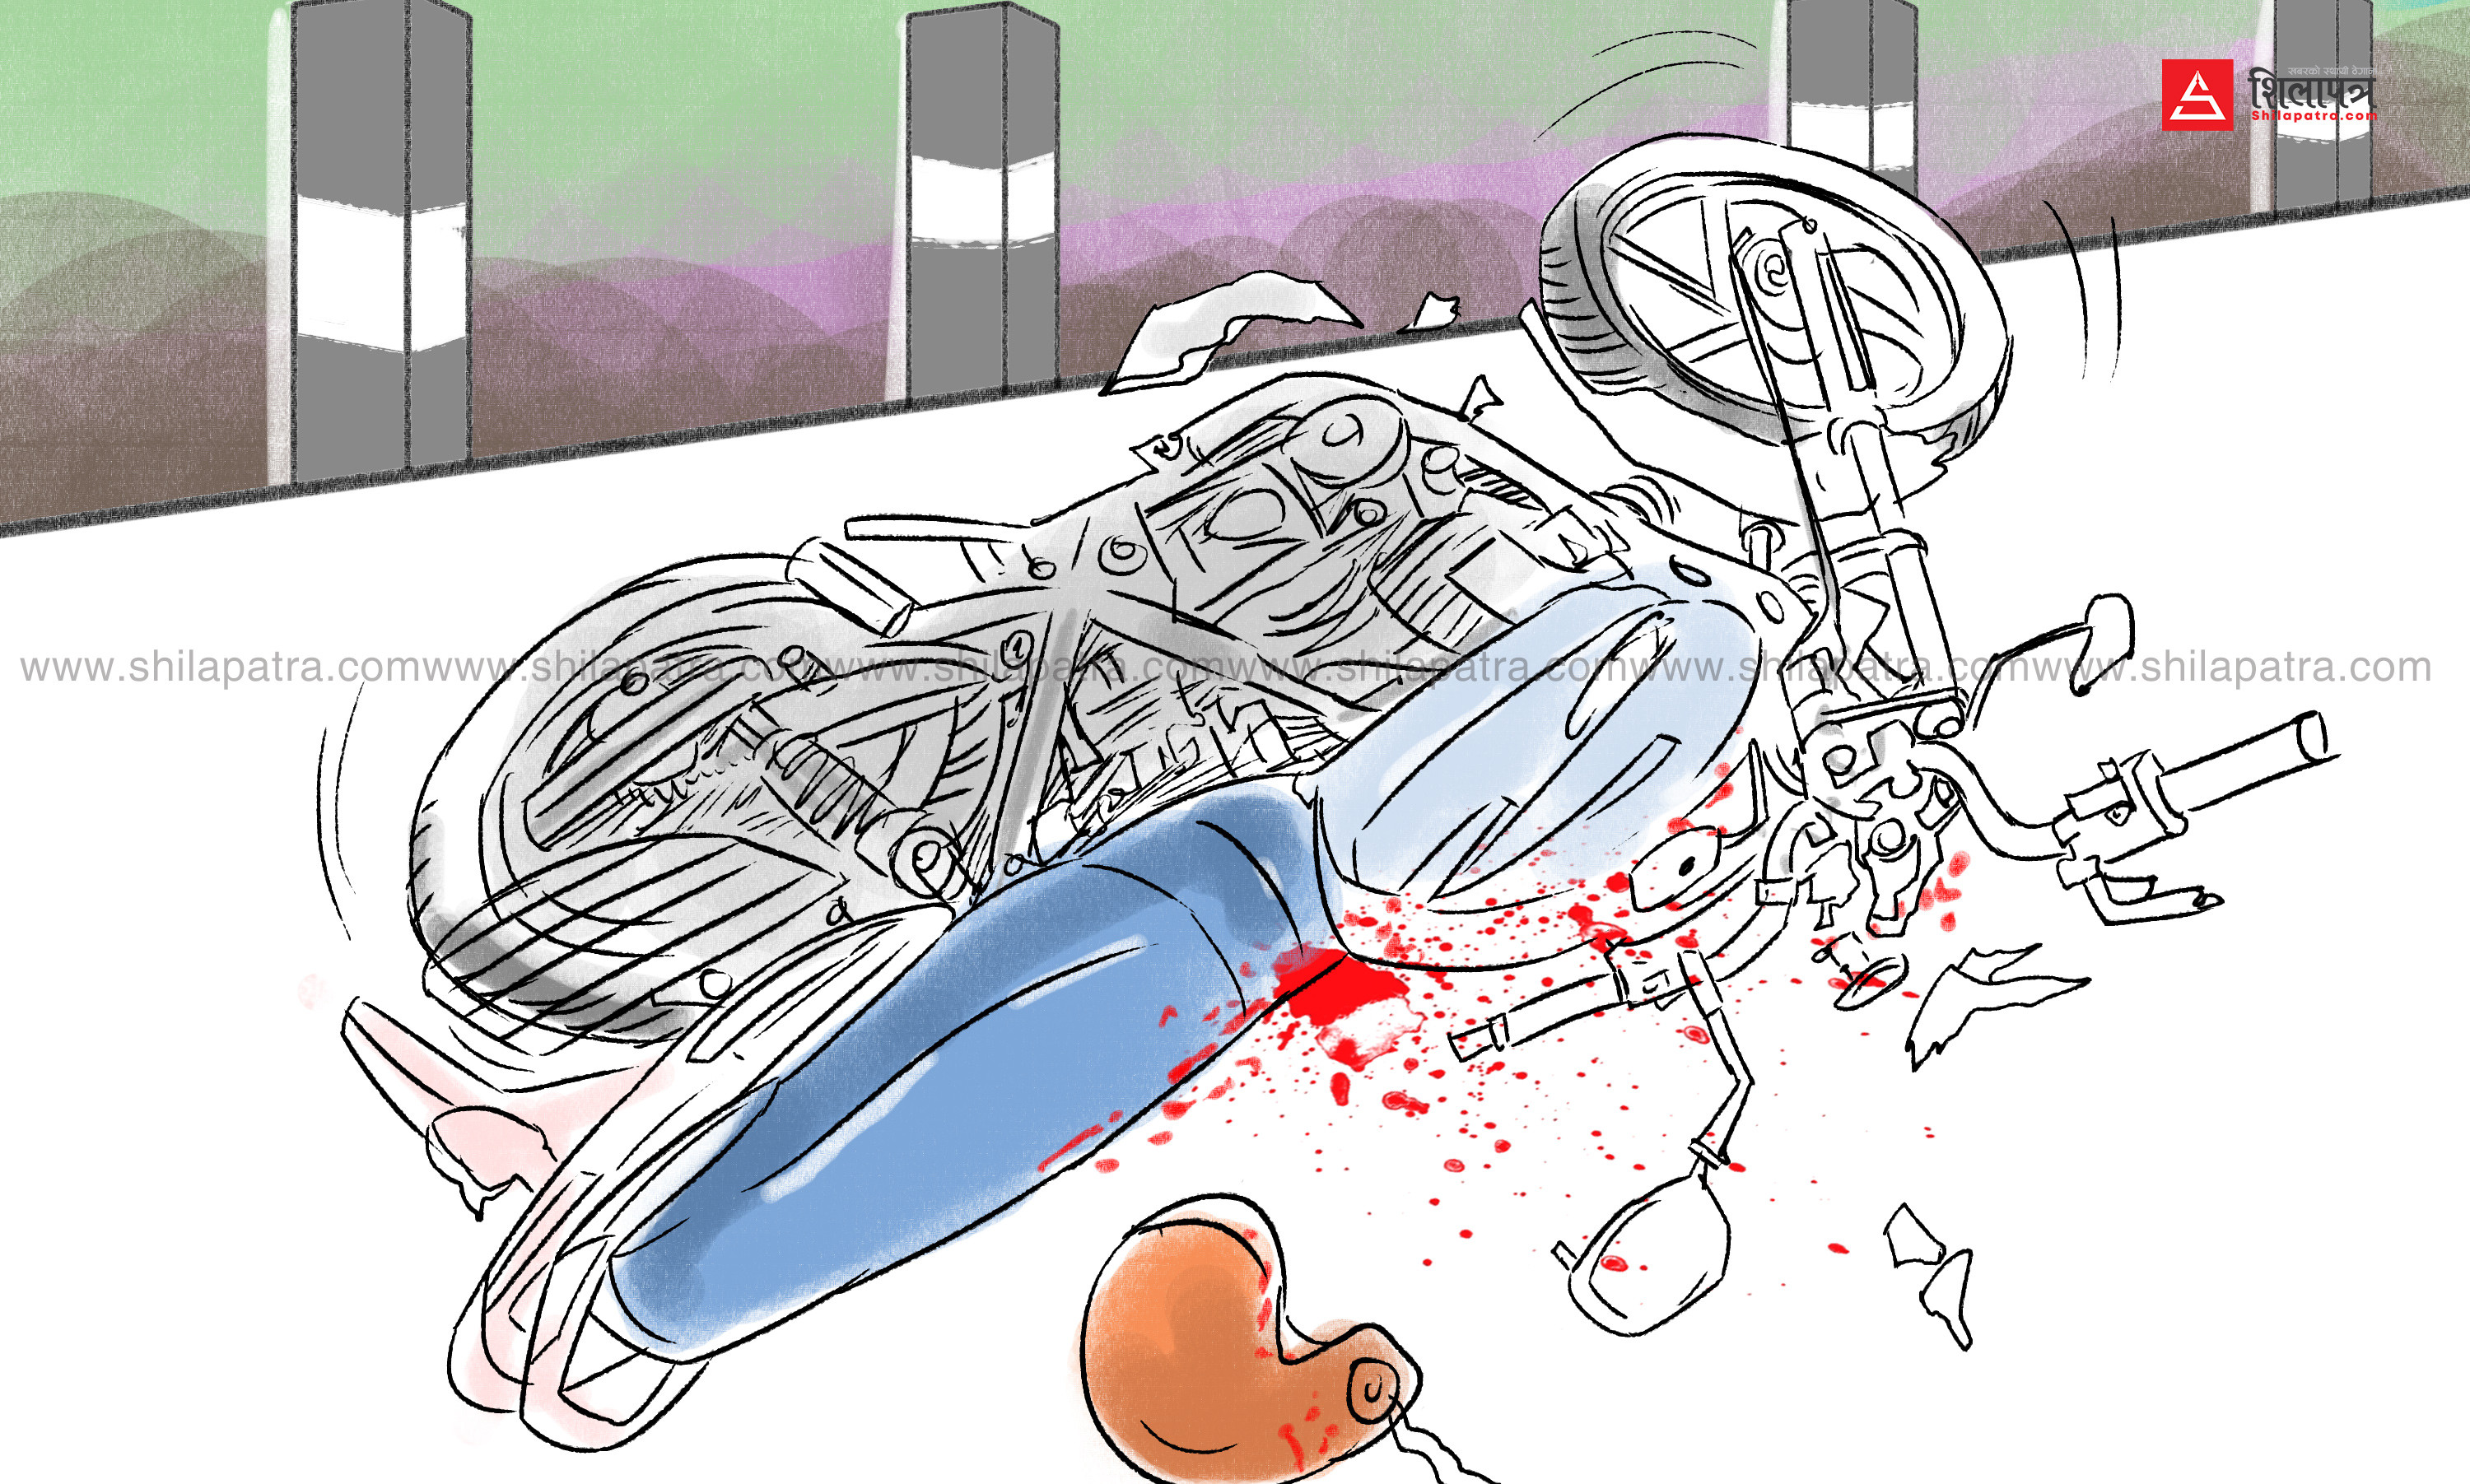 उर्लाबारीमा पिकअप भ्यानकाे ठक्करबाट माेटरसाइकल चालक २८ वर्षे युवककाे मृत्यु